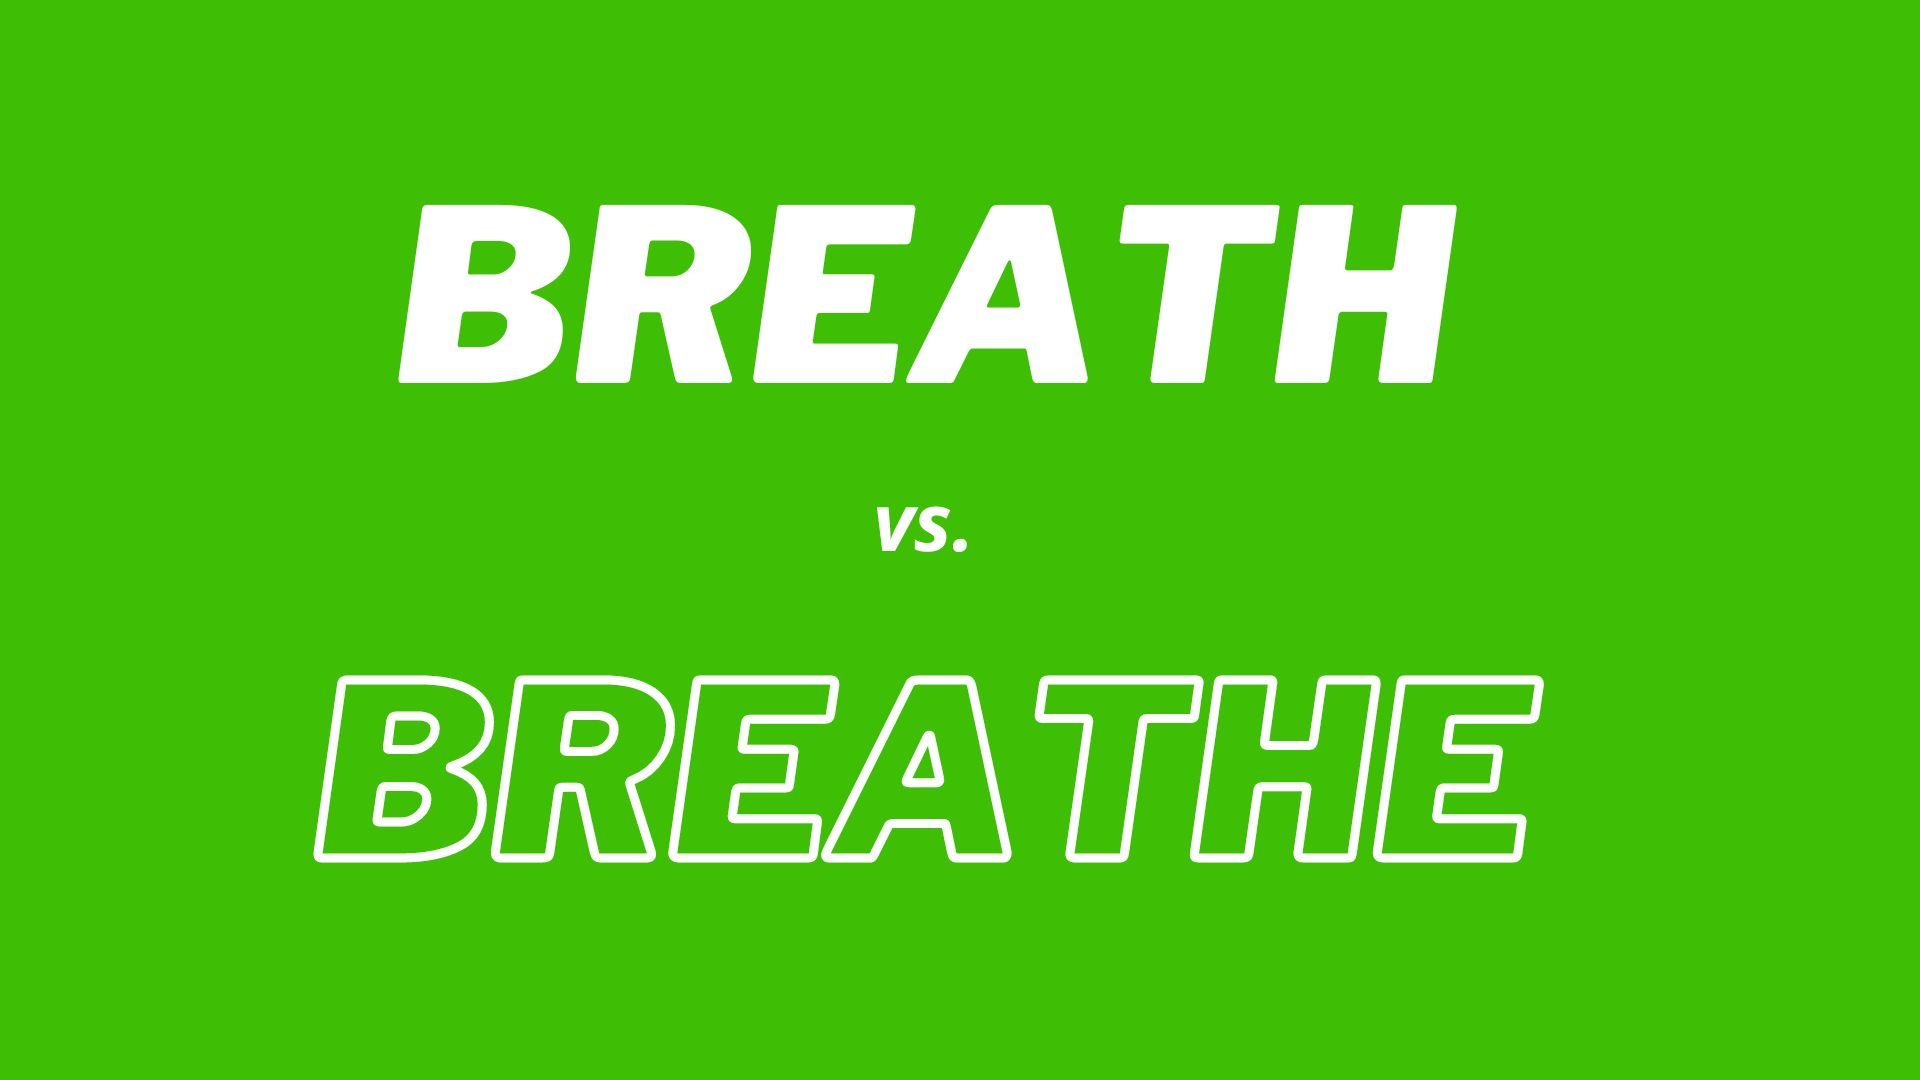 Comparación visual y definiciones de las palabras "Breath" y "Breathe".